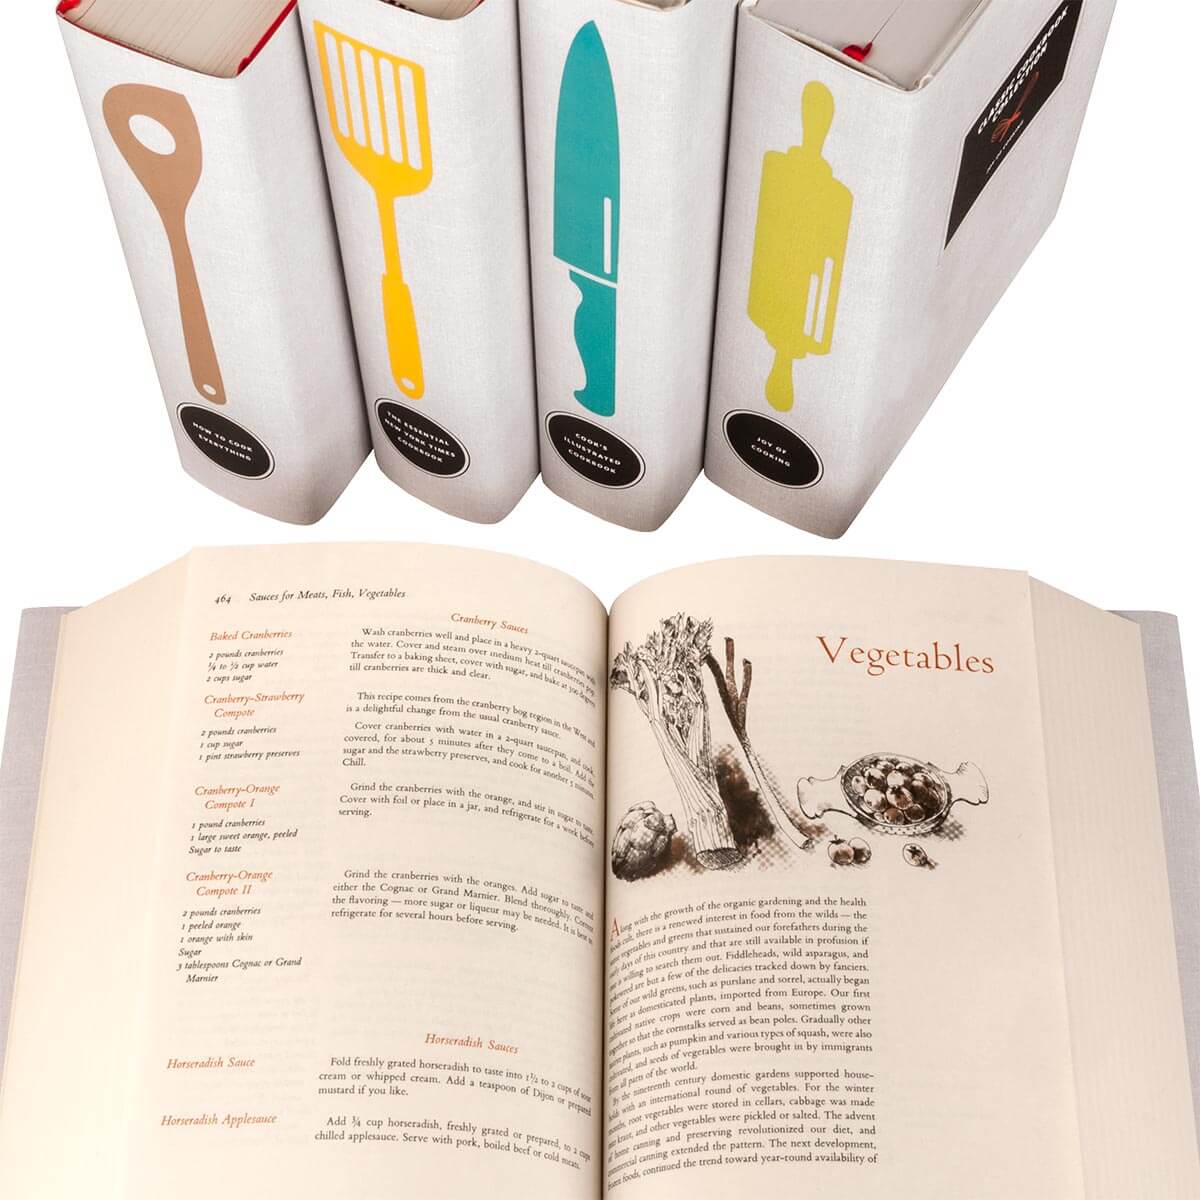 Customized Classic Cookbooks - Utensils Set